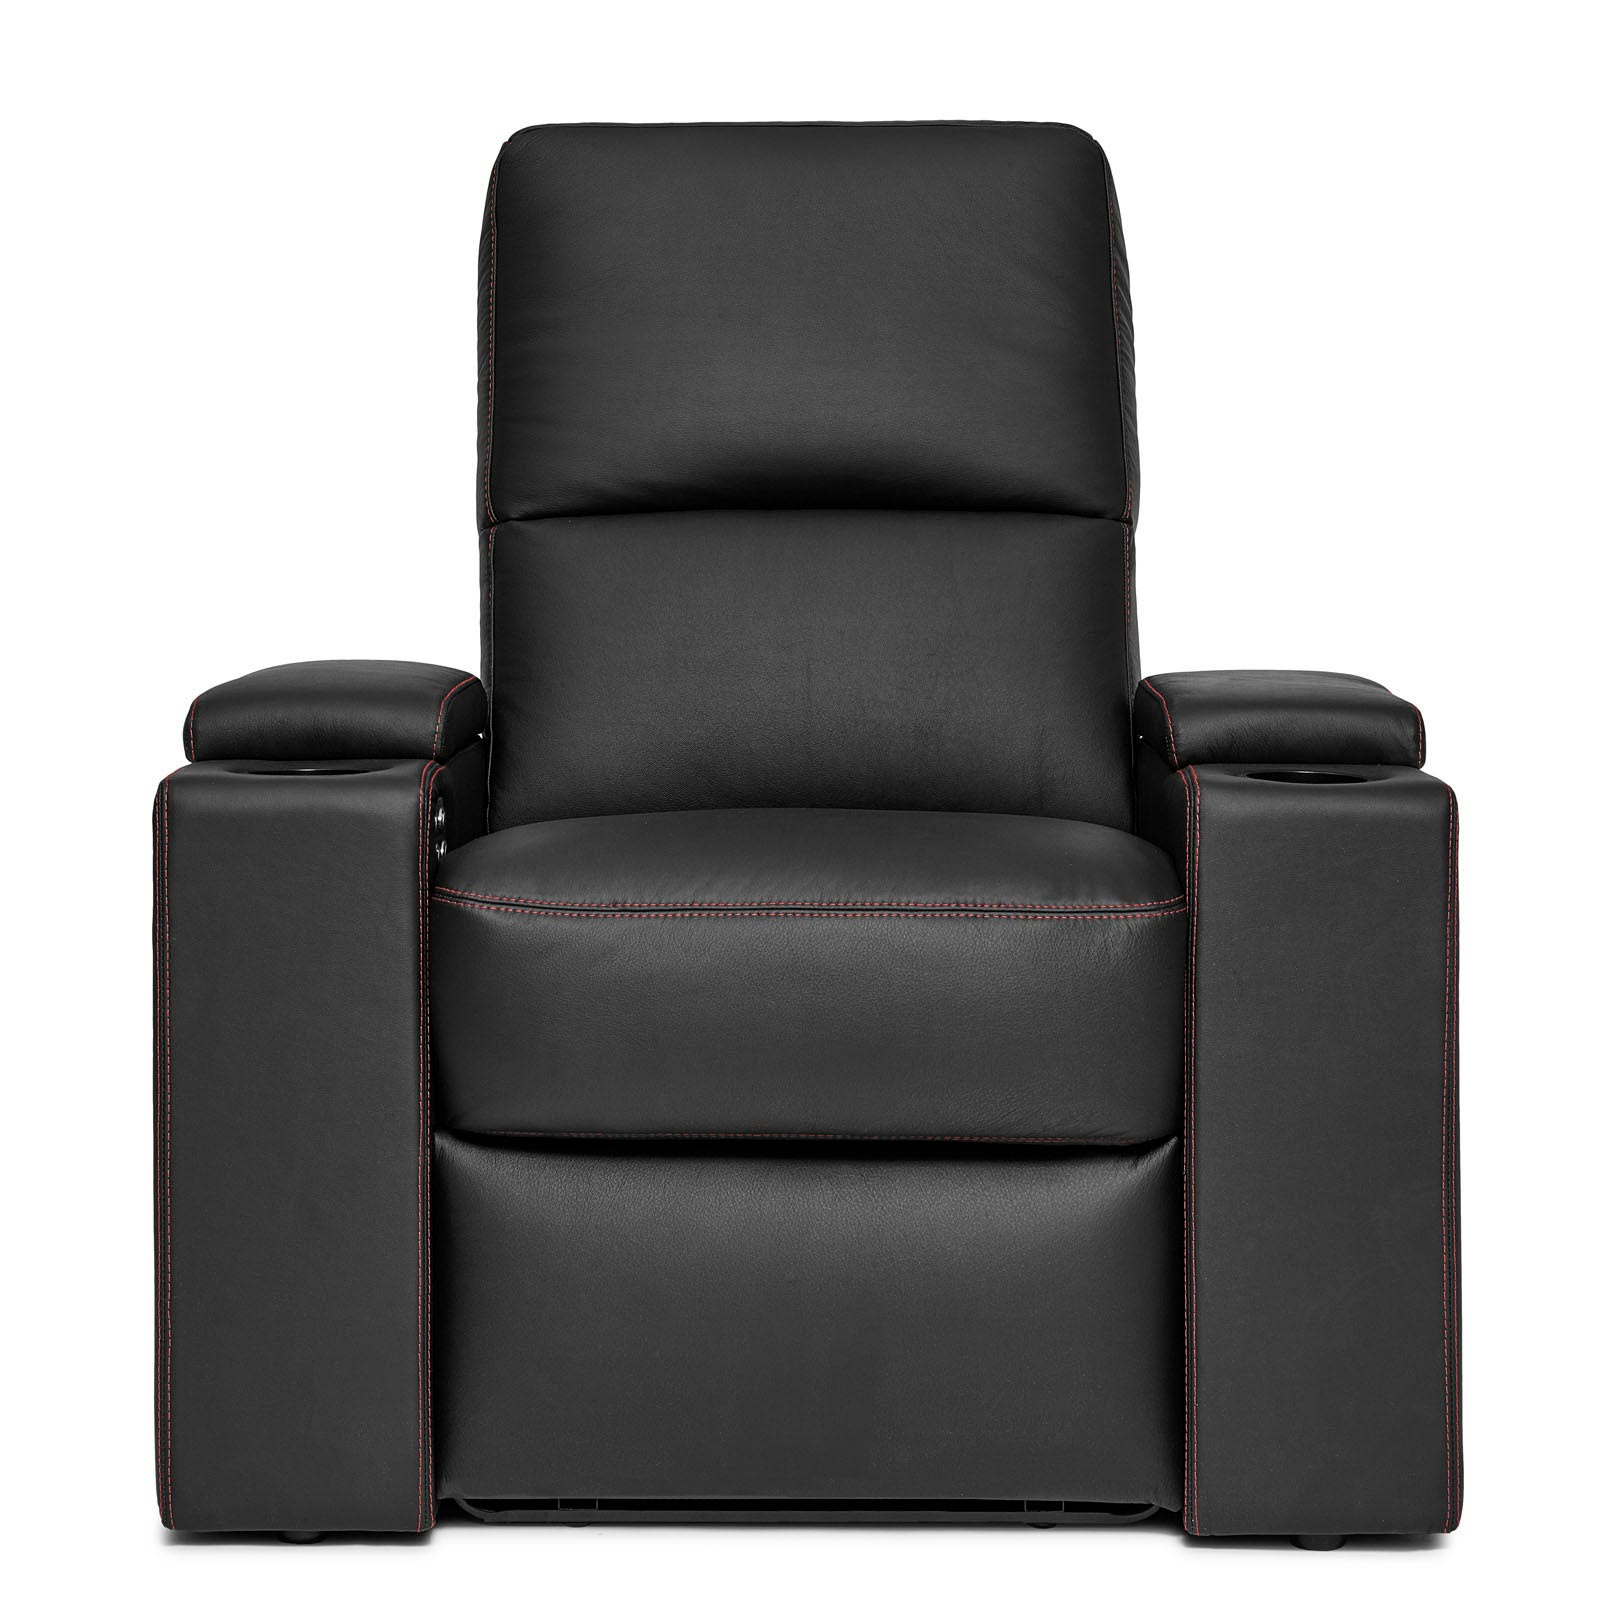 Удлиненное кресло. D Box кресла. Кресло удлиненное для ног. Кресло forum d.